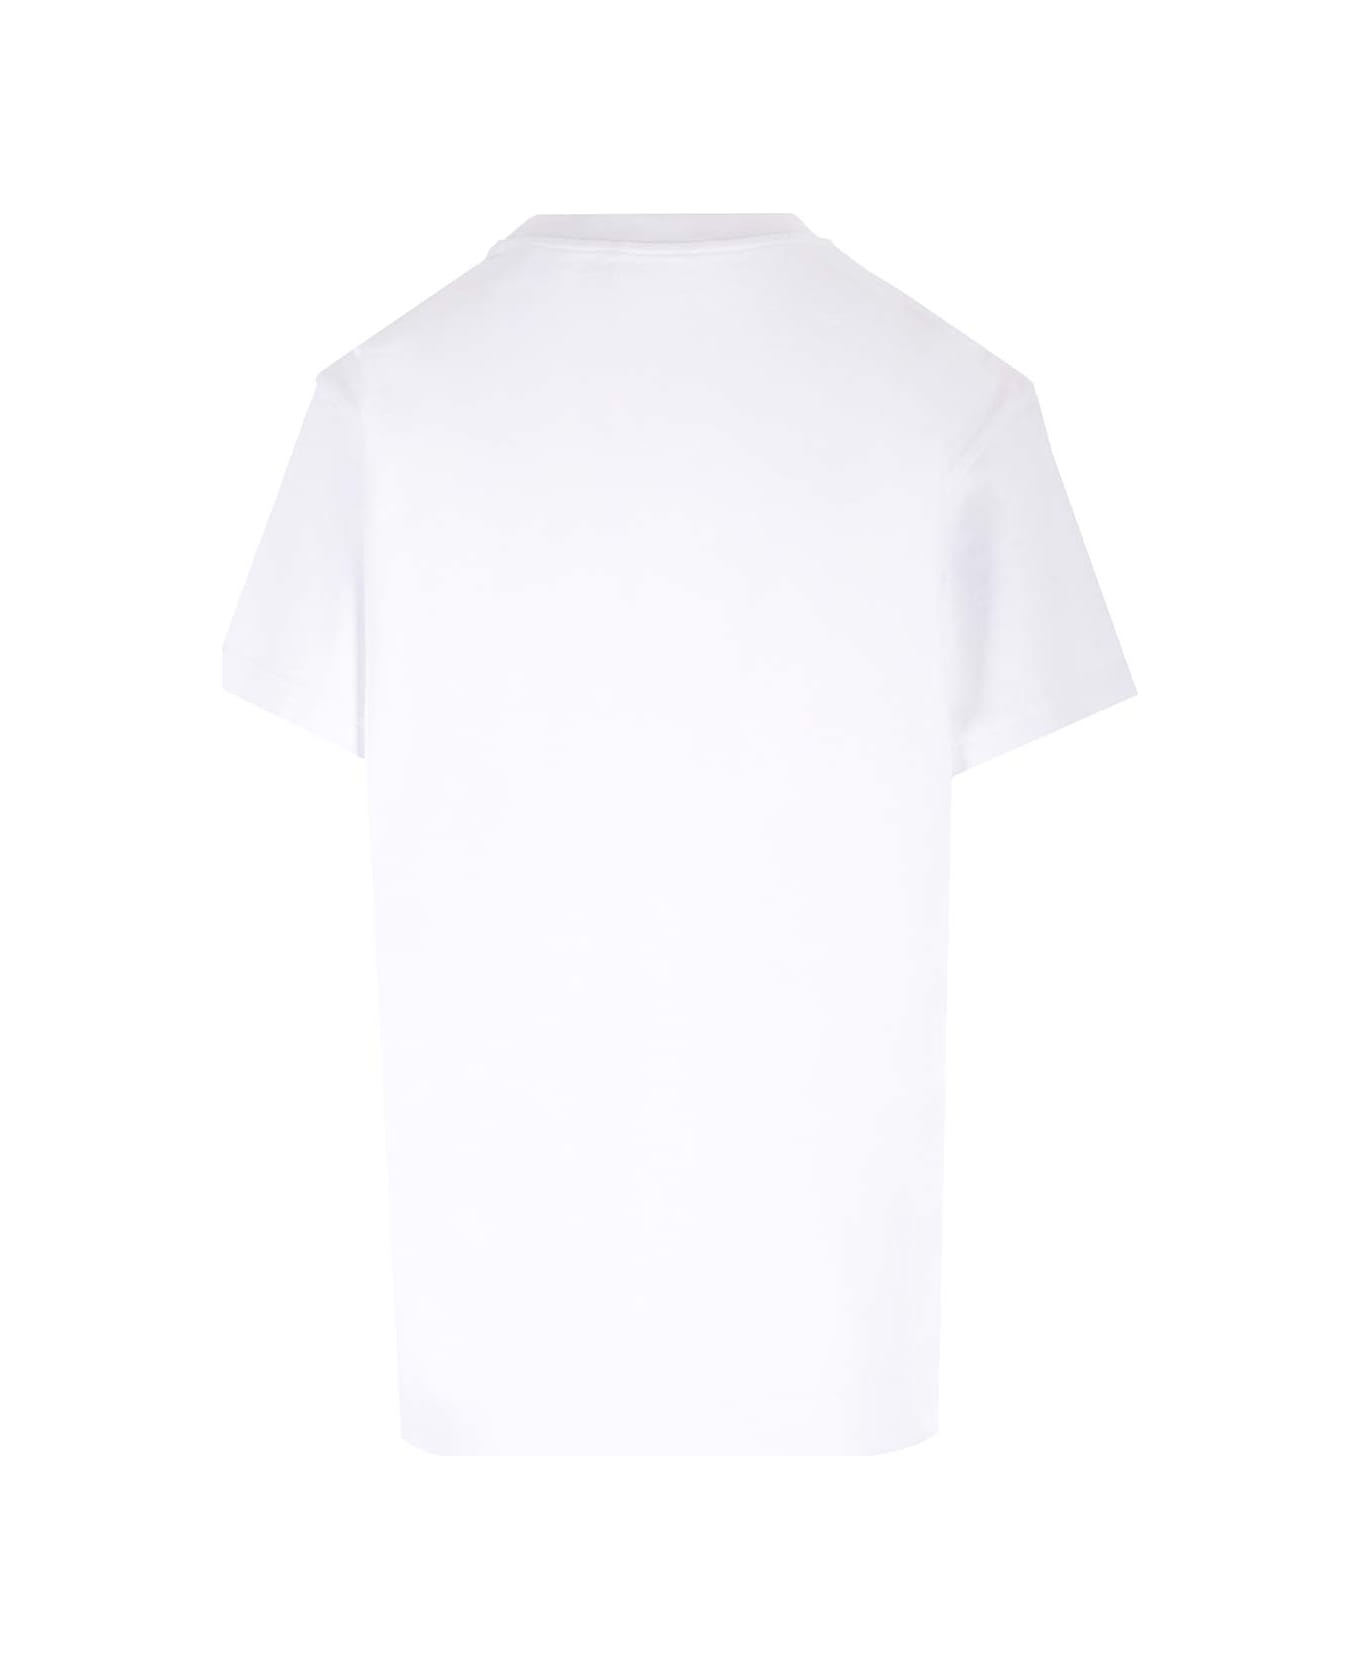 Chloé Signature T-shirt - White Tシャツ